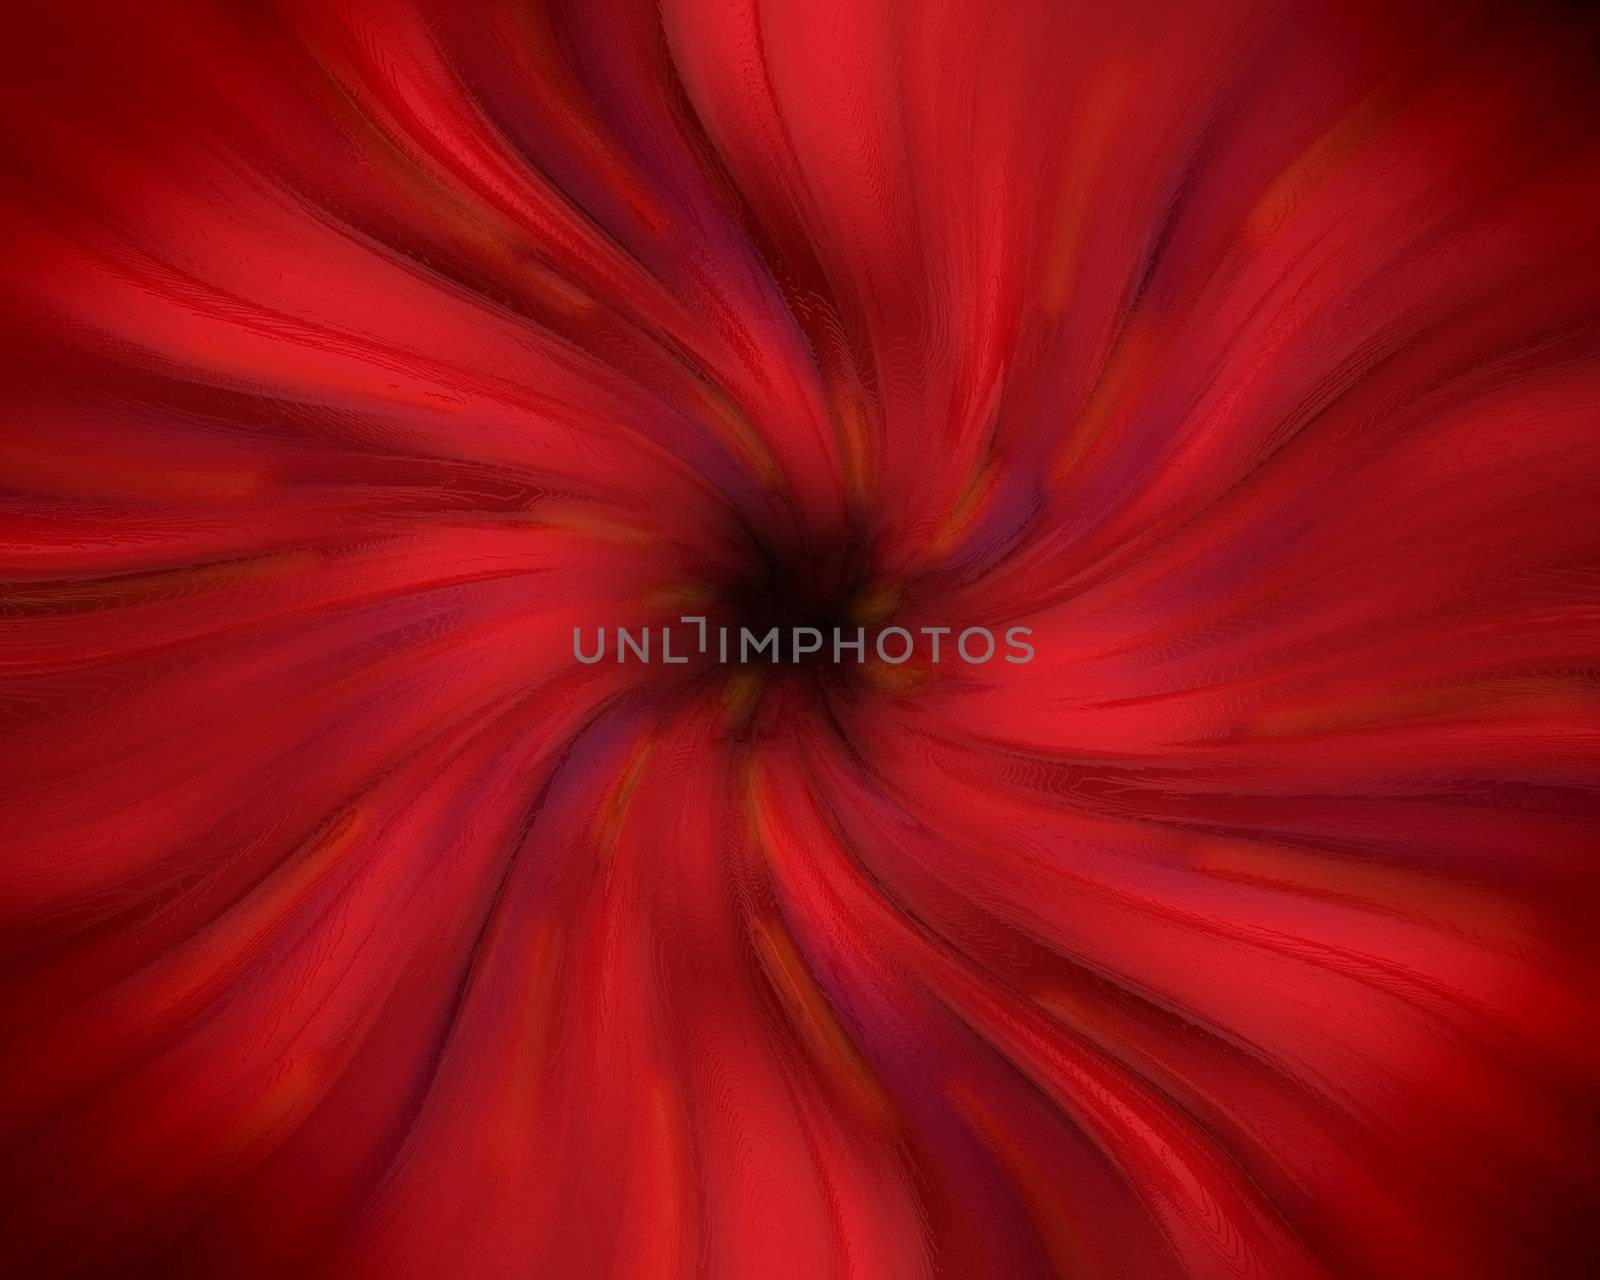 Red swirling vortex by Balefire9